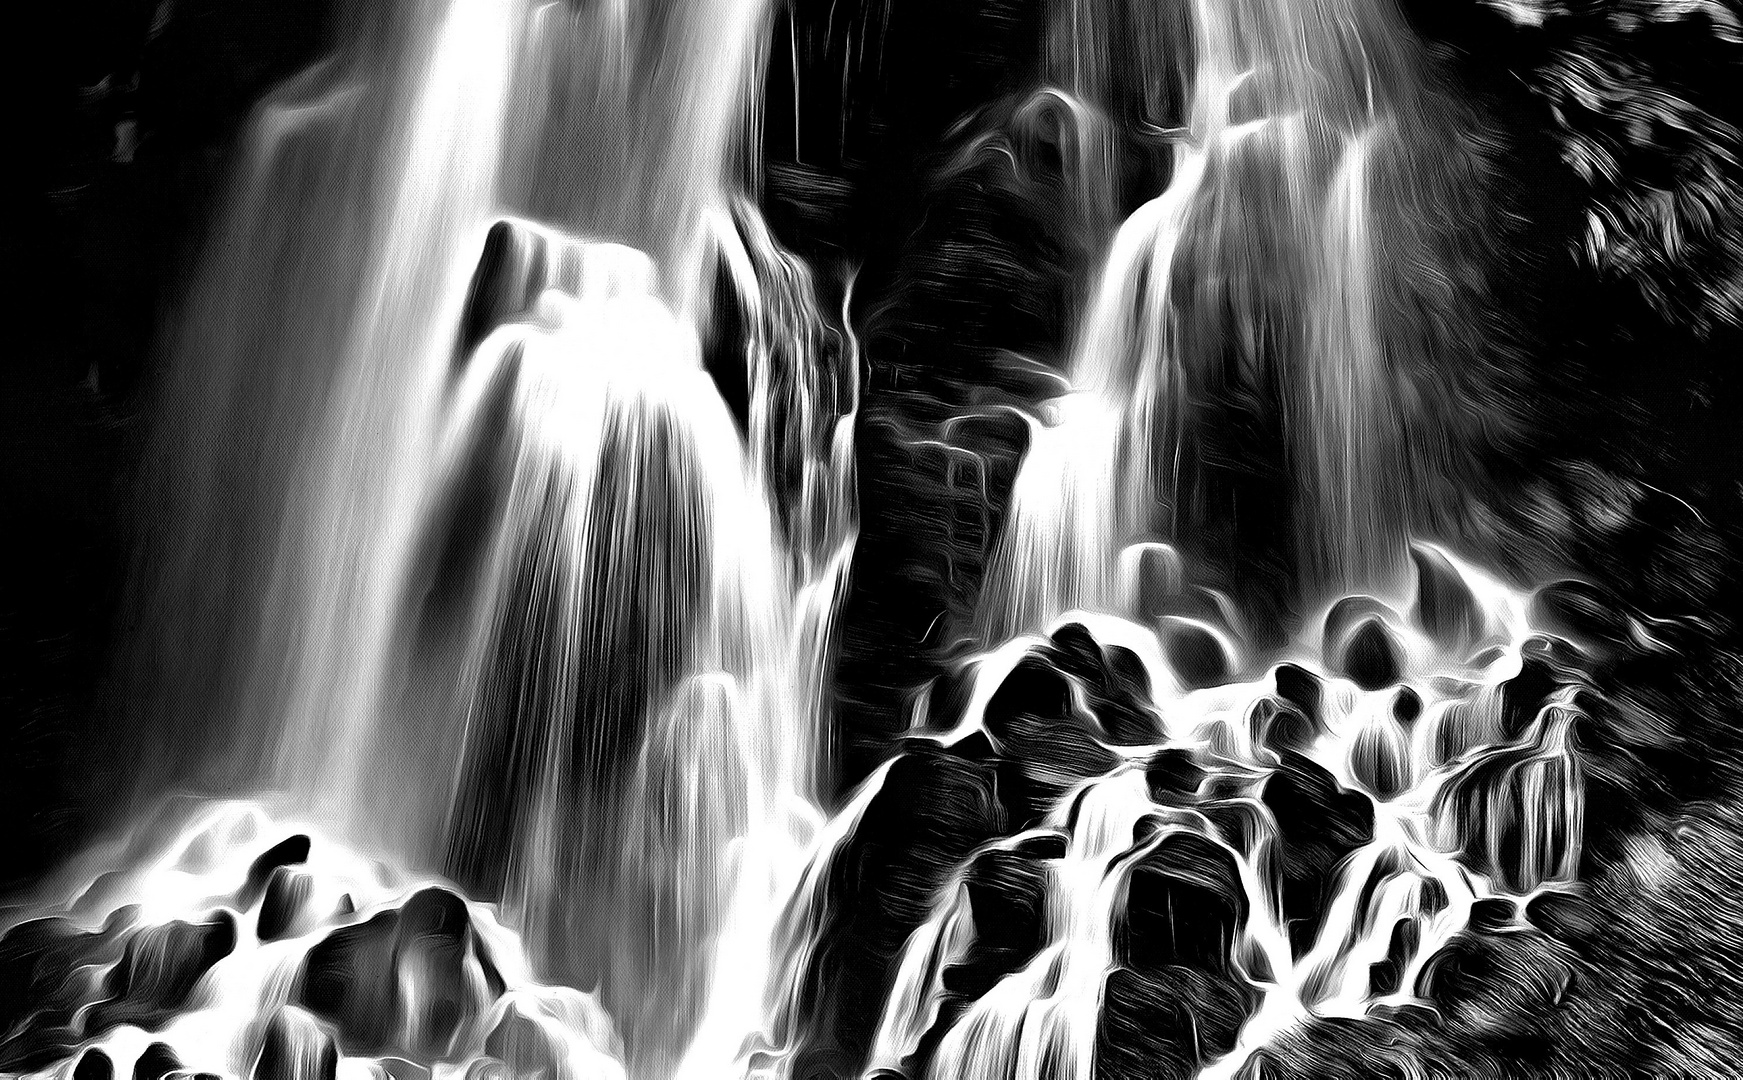 Waterfall in b&w